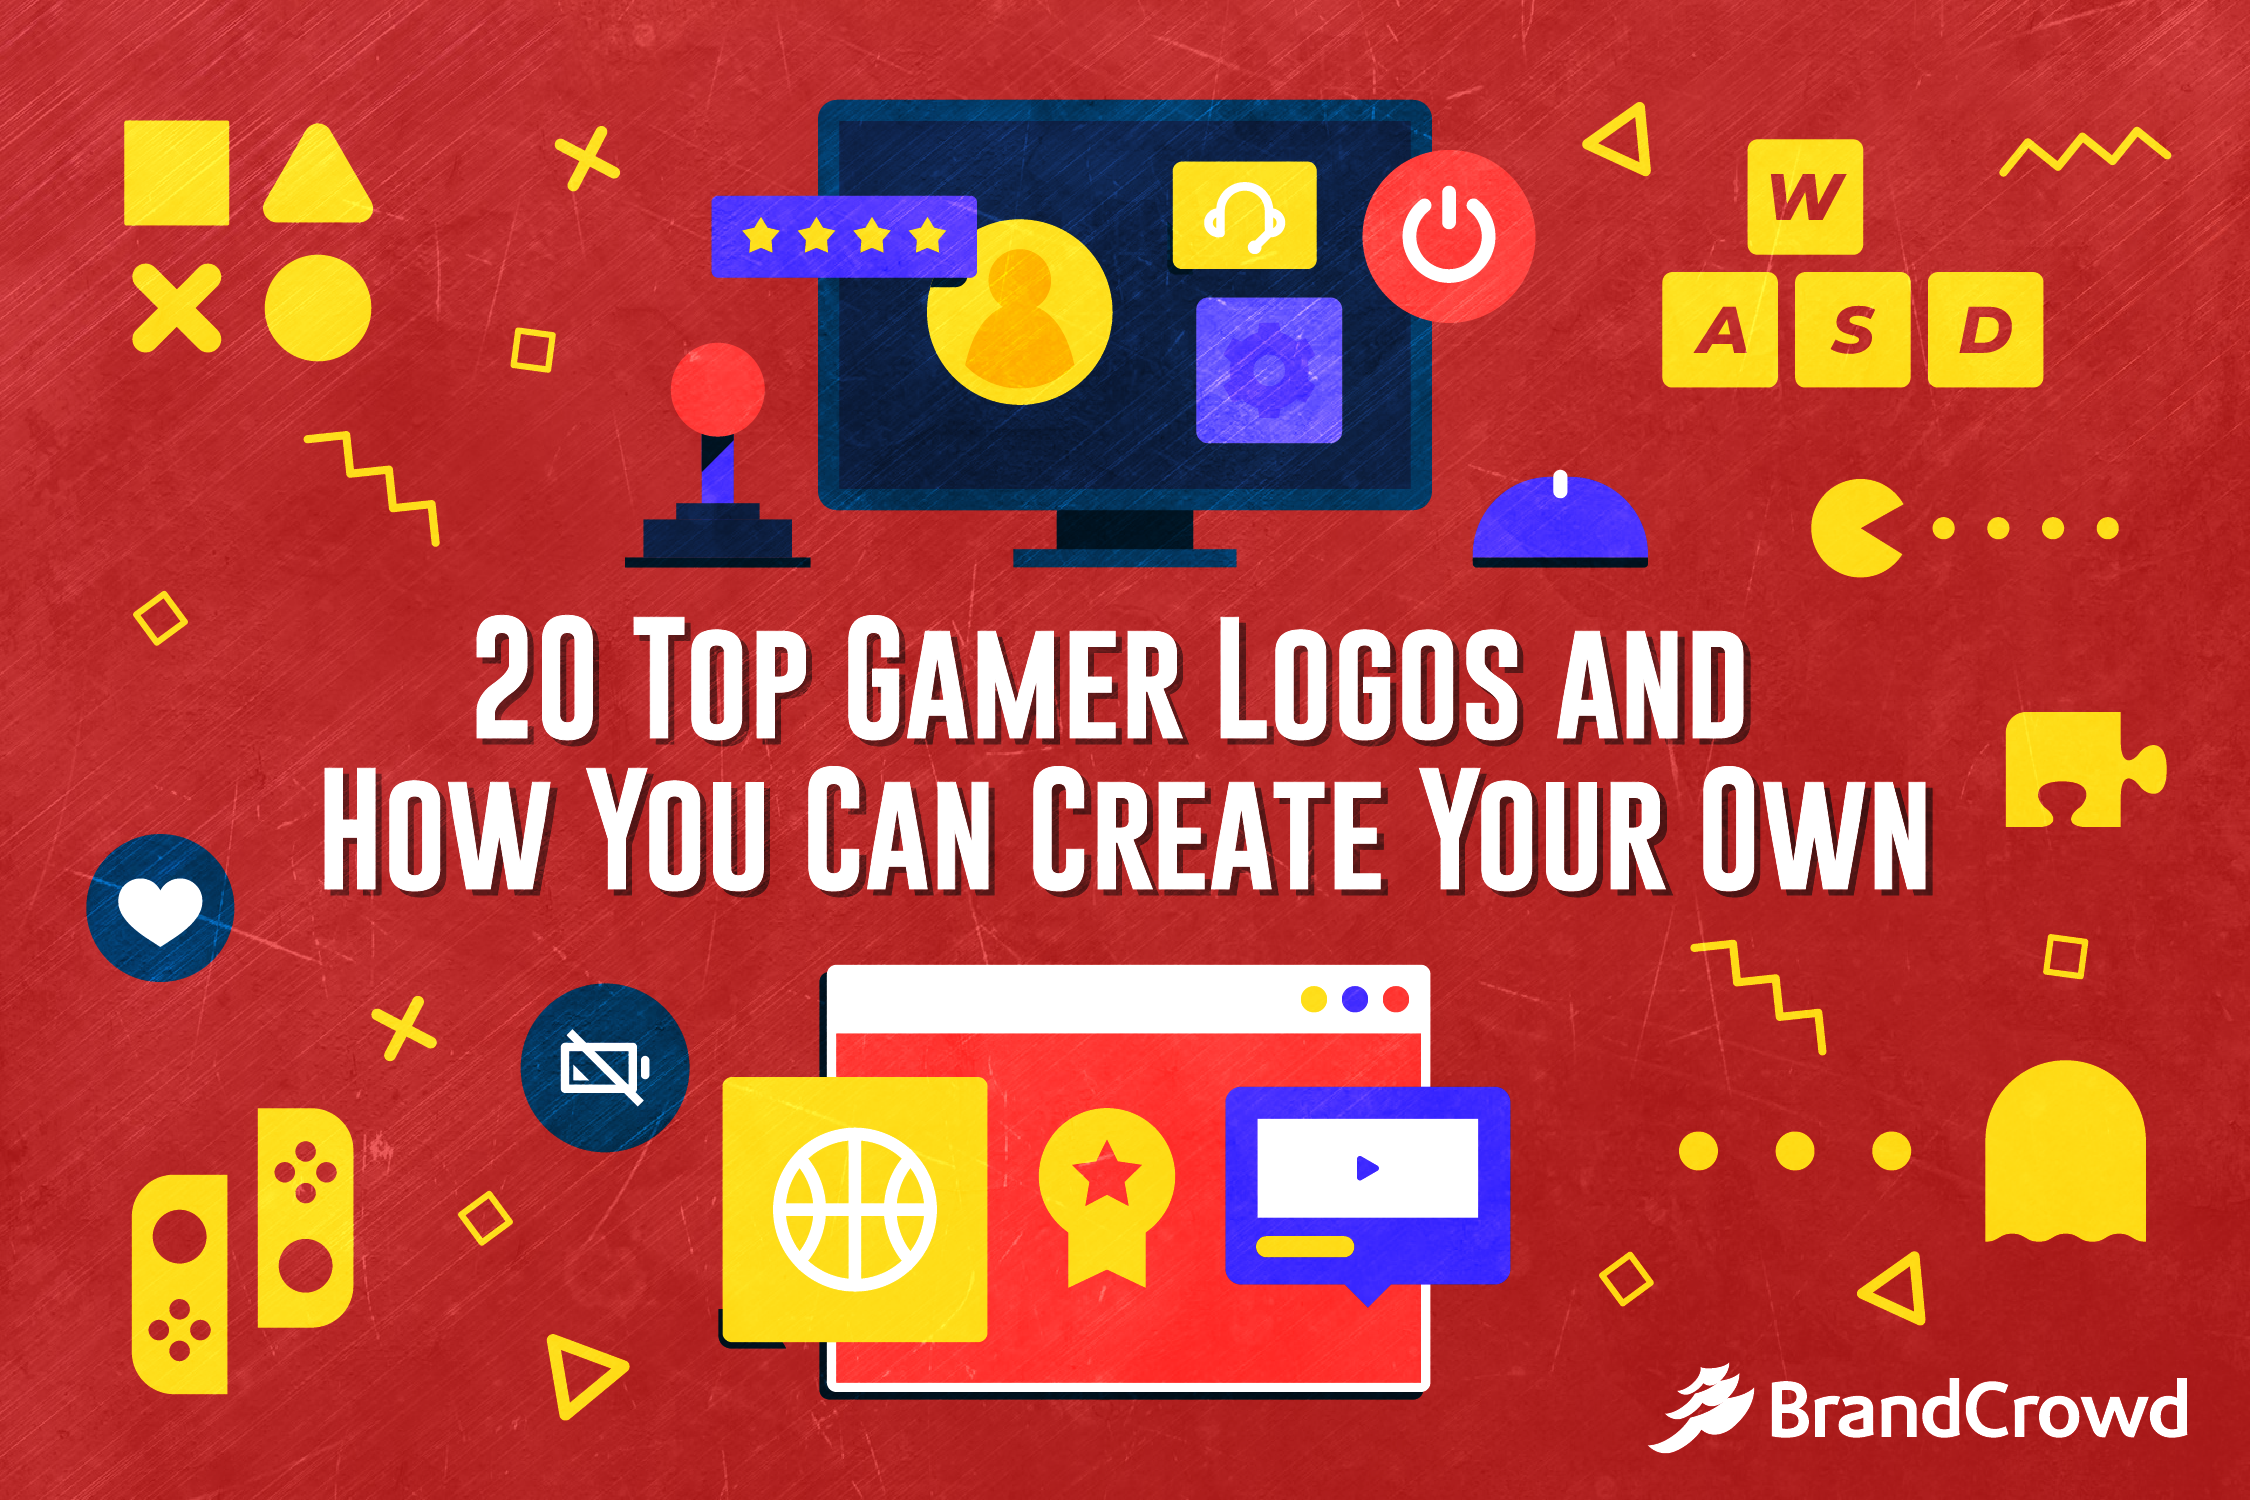 Gaming logo maker - Make your own logos now